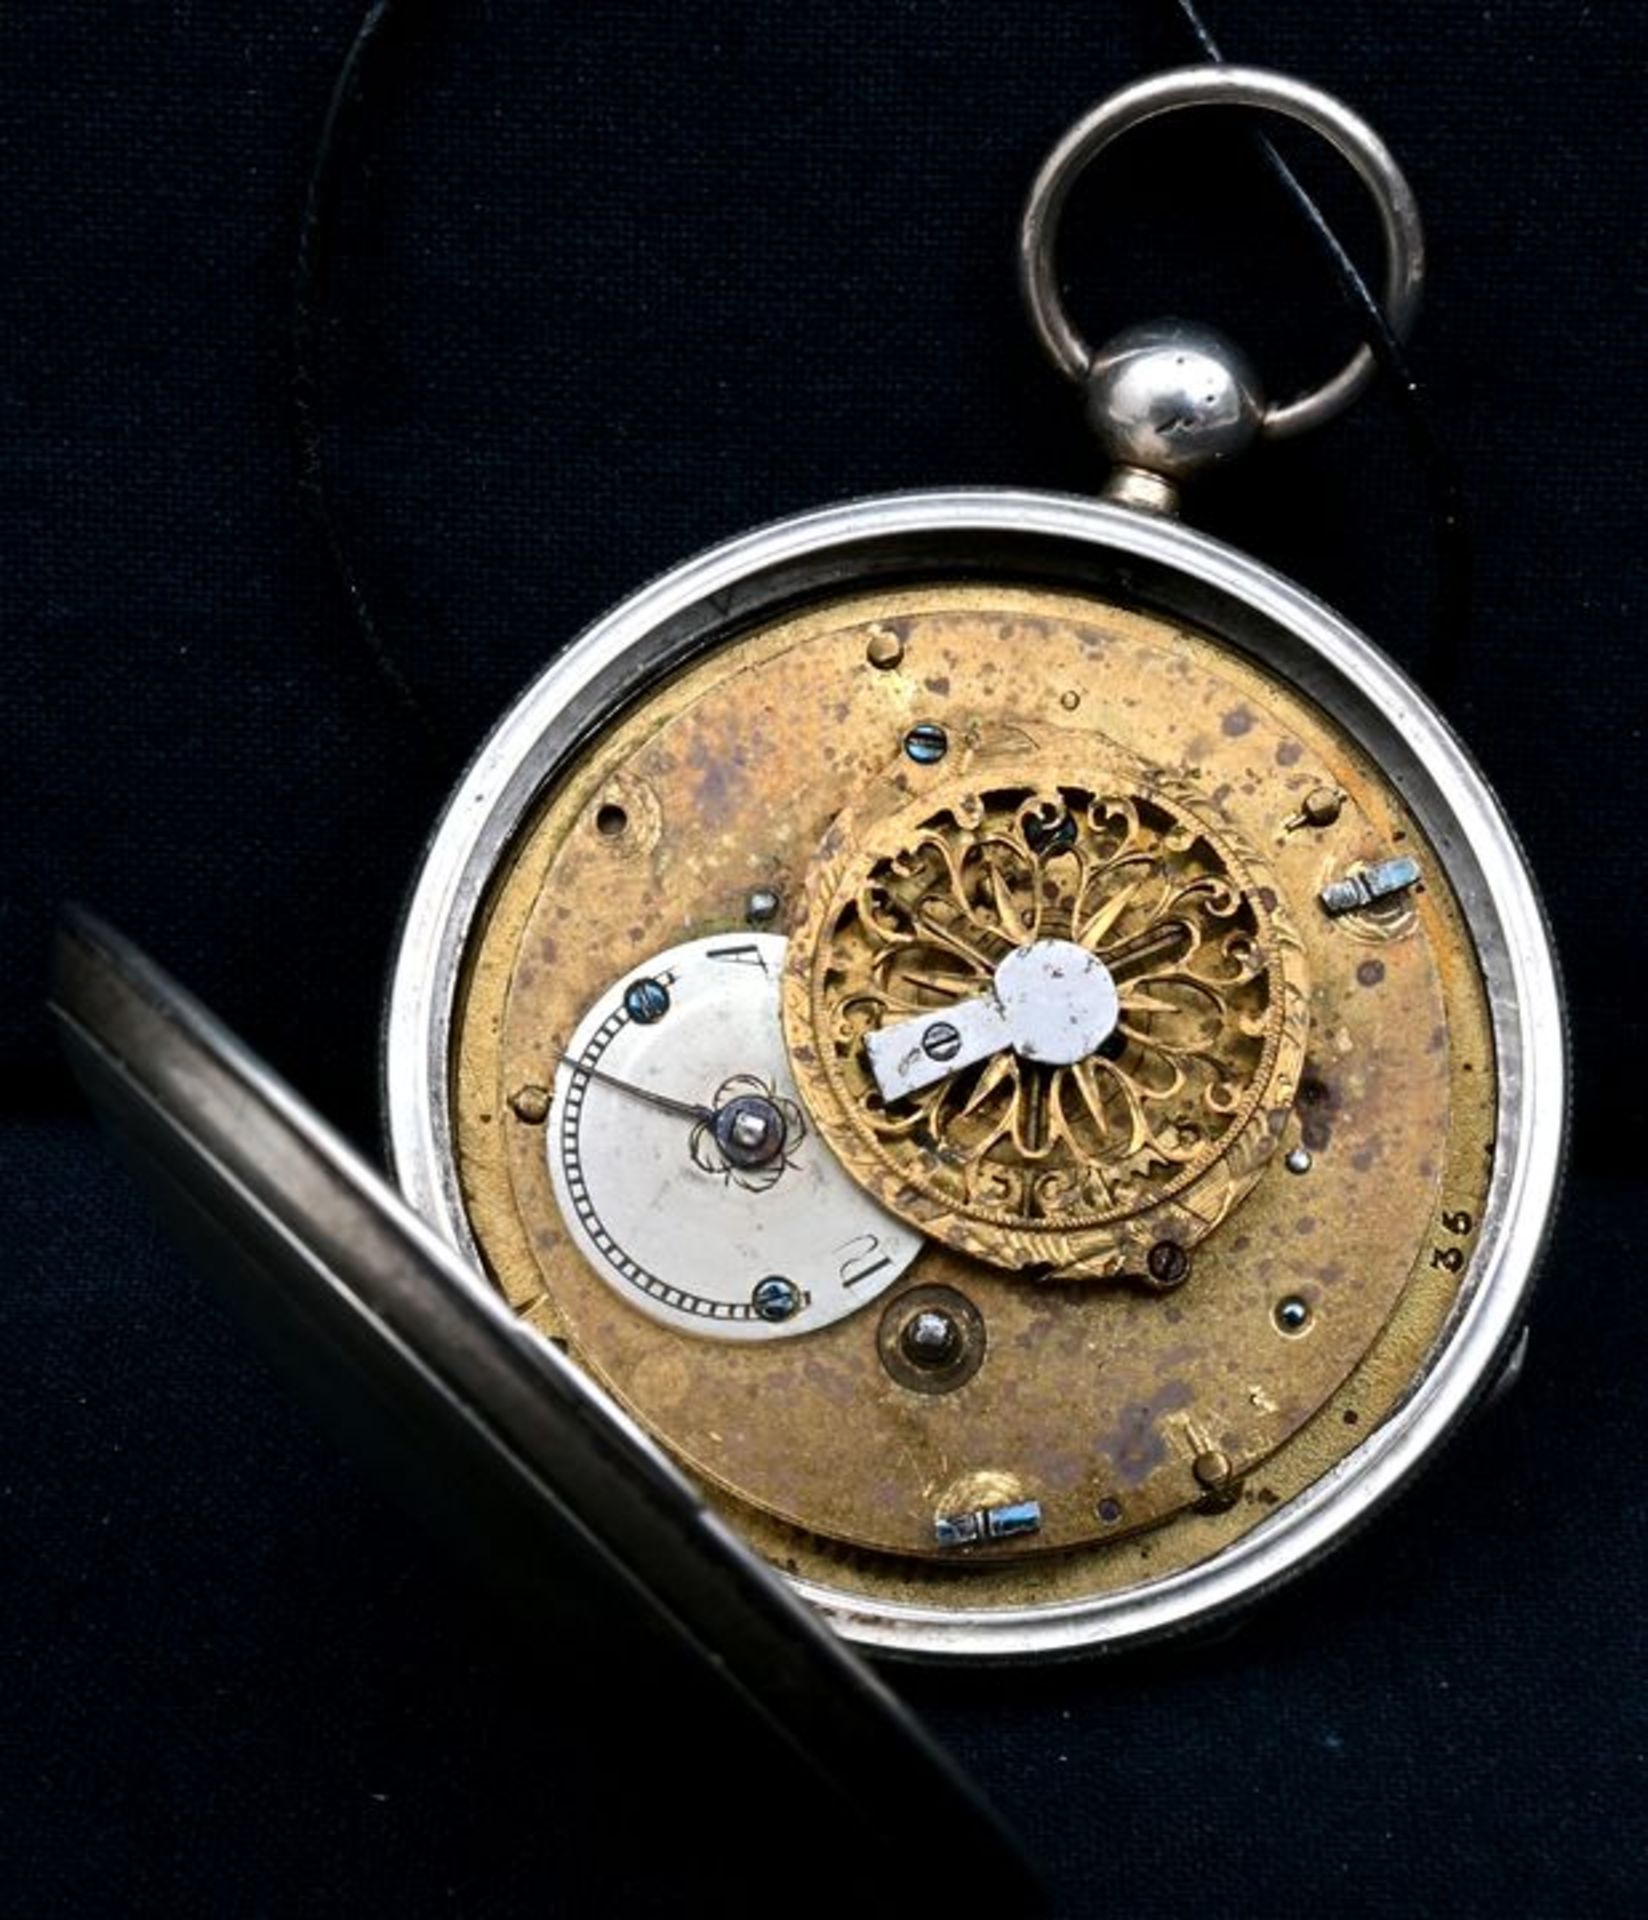 Spindeltaschenuhr / Verge pocket watch - Image 2 of 3